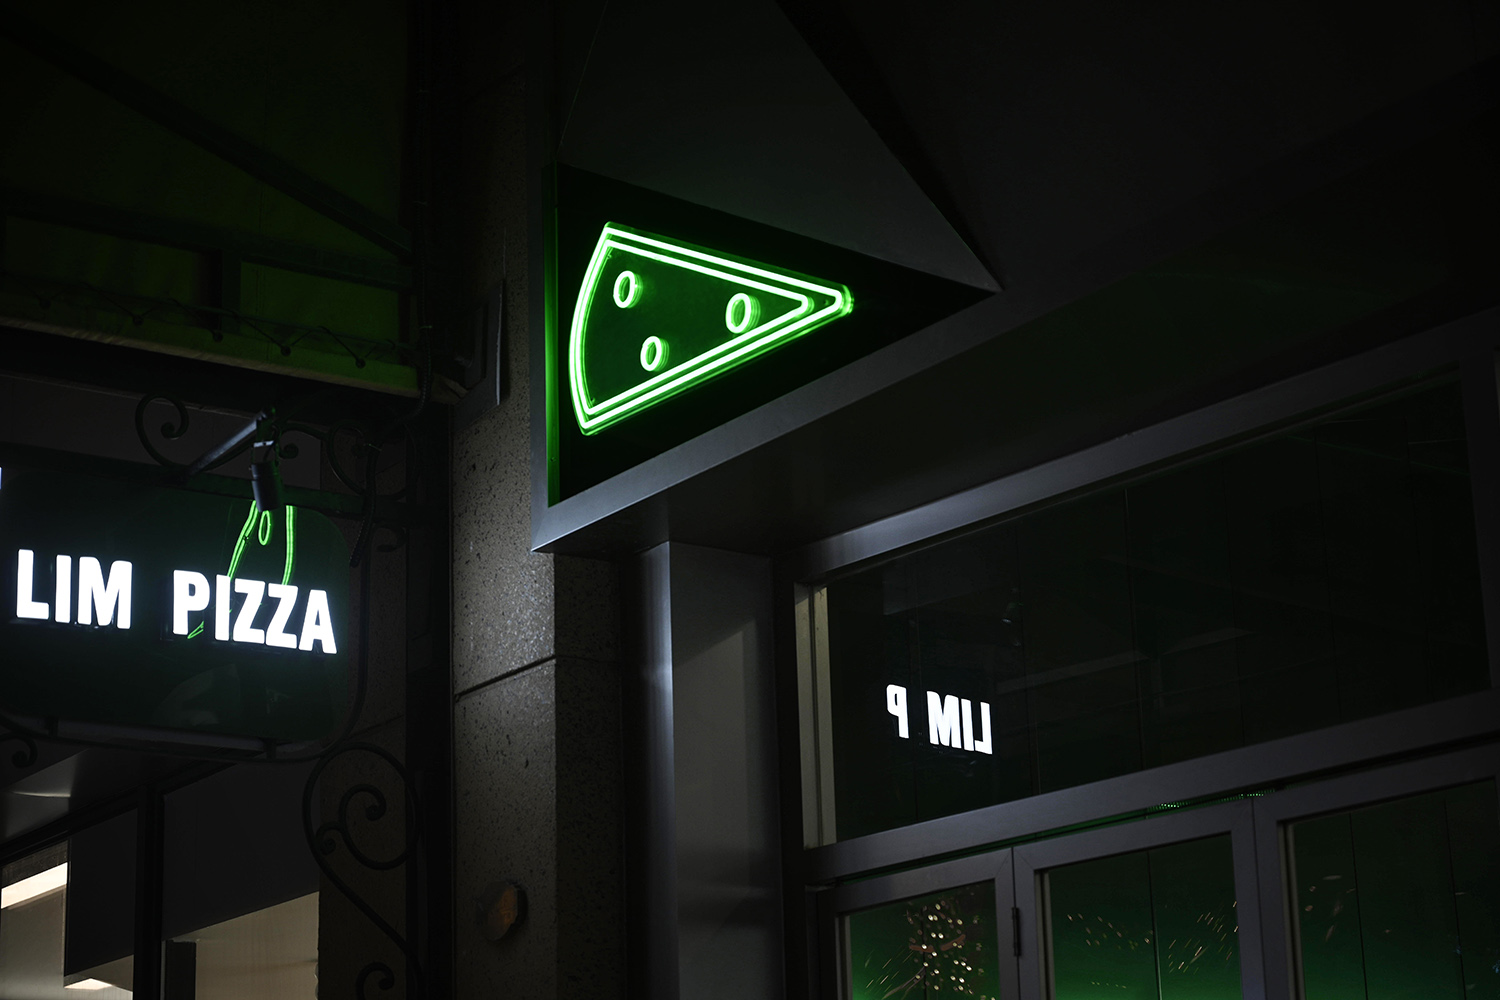 LIM PIZZA店,蘇州披薩店設計,餐廳設計,網紅披薩店設計,披薩店設計案例,PIZZA店設計,蘇州網紅店設計,平介設計,Parallect-design